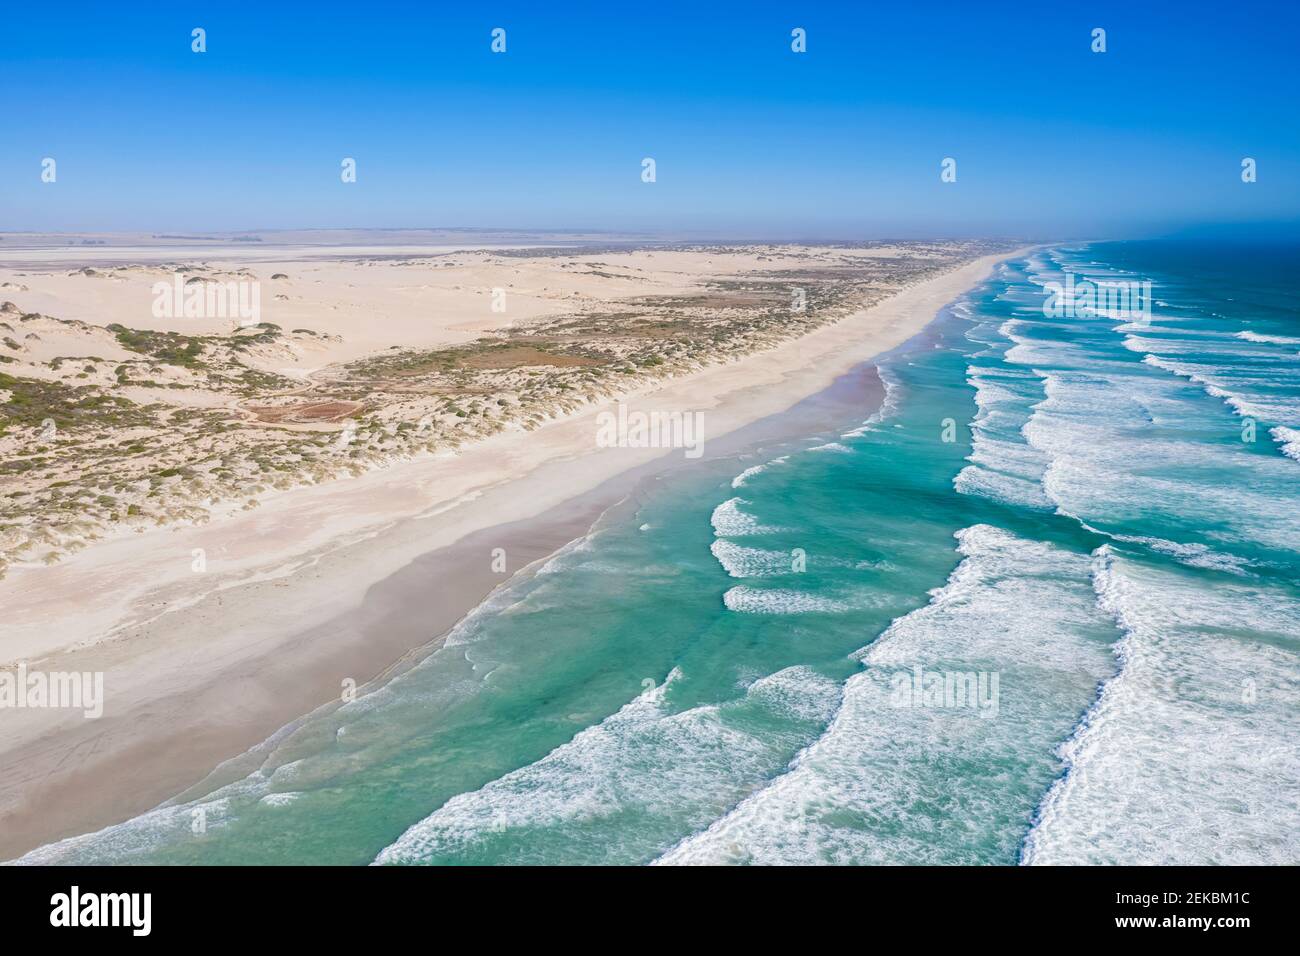 Australie, Océanie, Australie méridionale, Grande Bight australienne, Talia, vue sur la mer et le littoral Banque D'Images